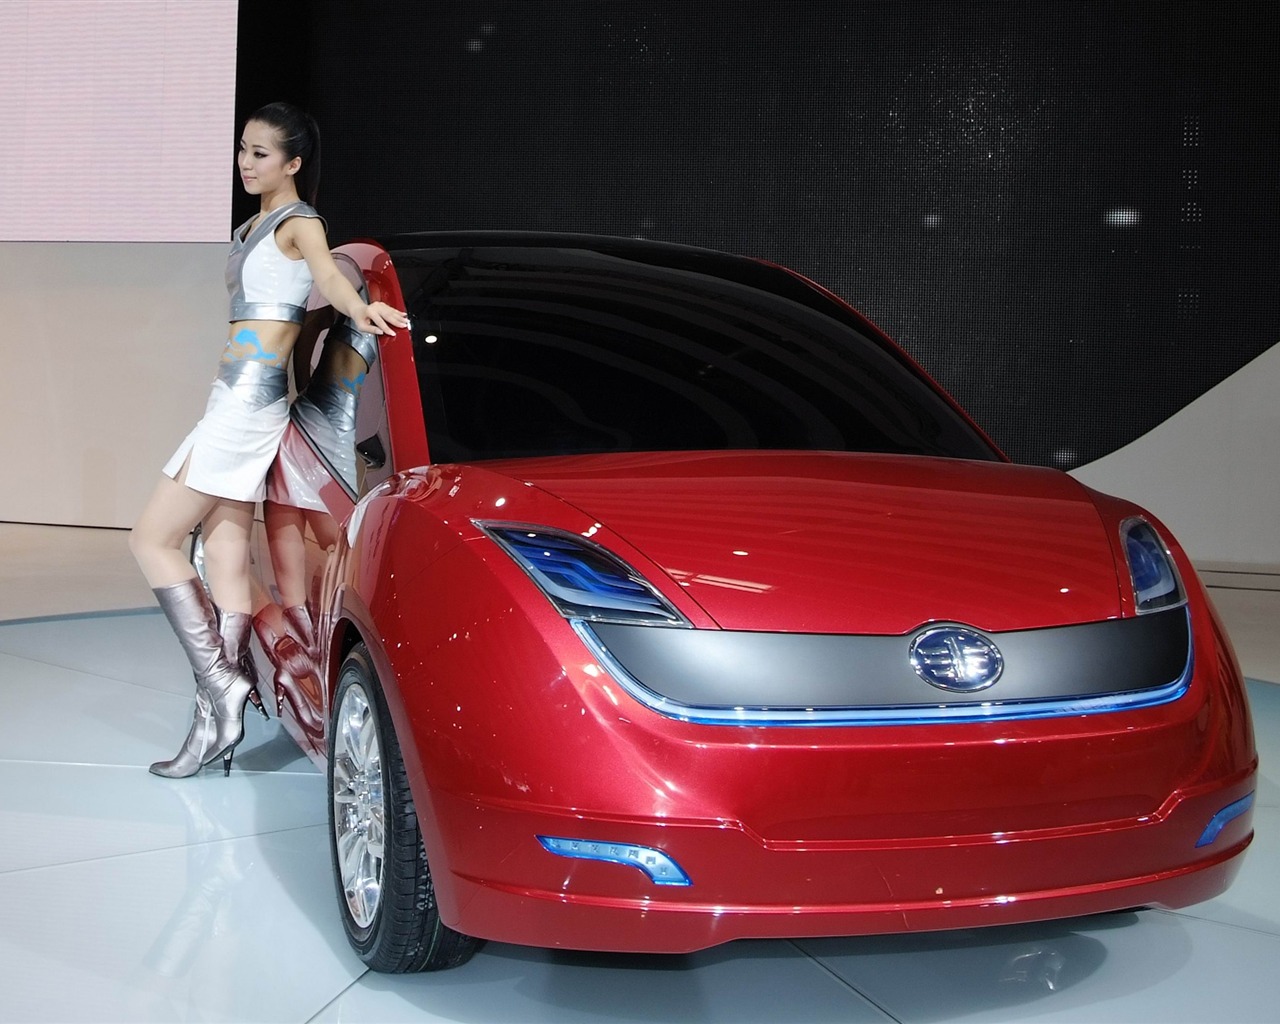 2010北京国际车展 香车美女 (螺纹钢作品)24 - 1280x1024